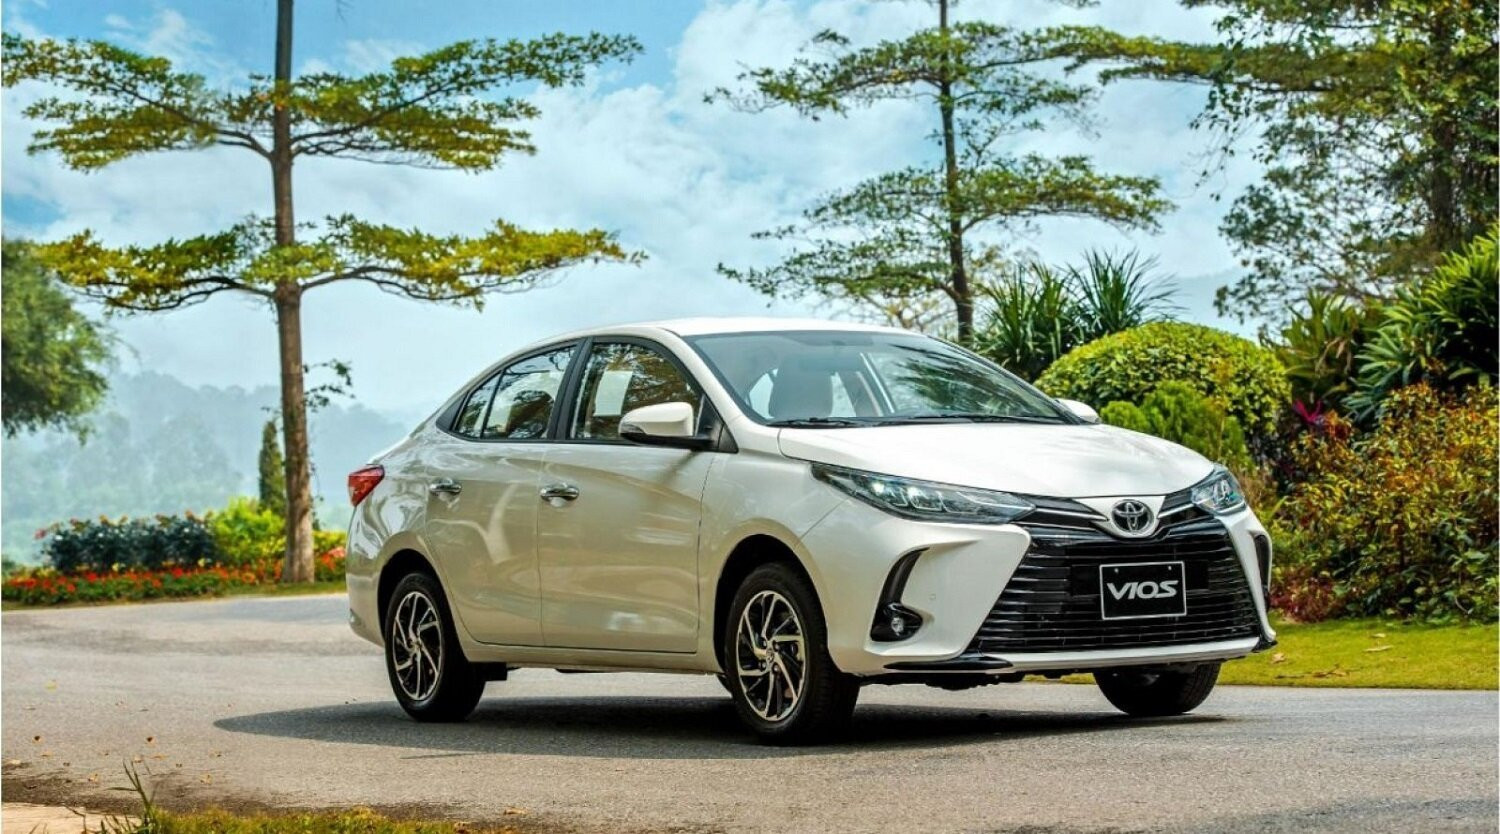 Toyota Vios giảm gần 50 triệu đồng giá niêm yết, đồng thời khách hàng mua xe còn nhận ưu đãi từ 30-50 triệu đồng, bao gồm tiền mặt và lắp đặt các phụ kiện, bảo hiểm đi kèm. (Ảnh: Toyota Việt Nam).